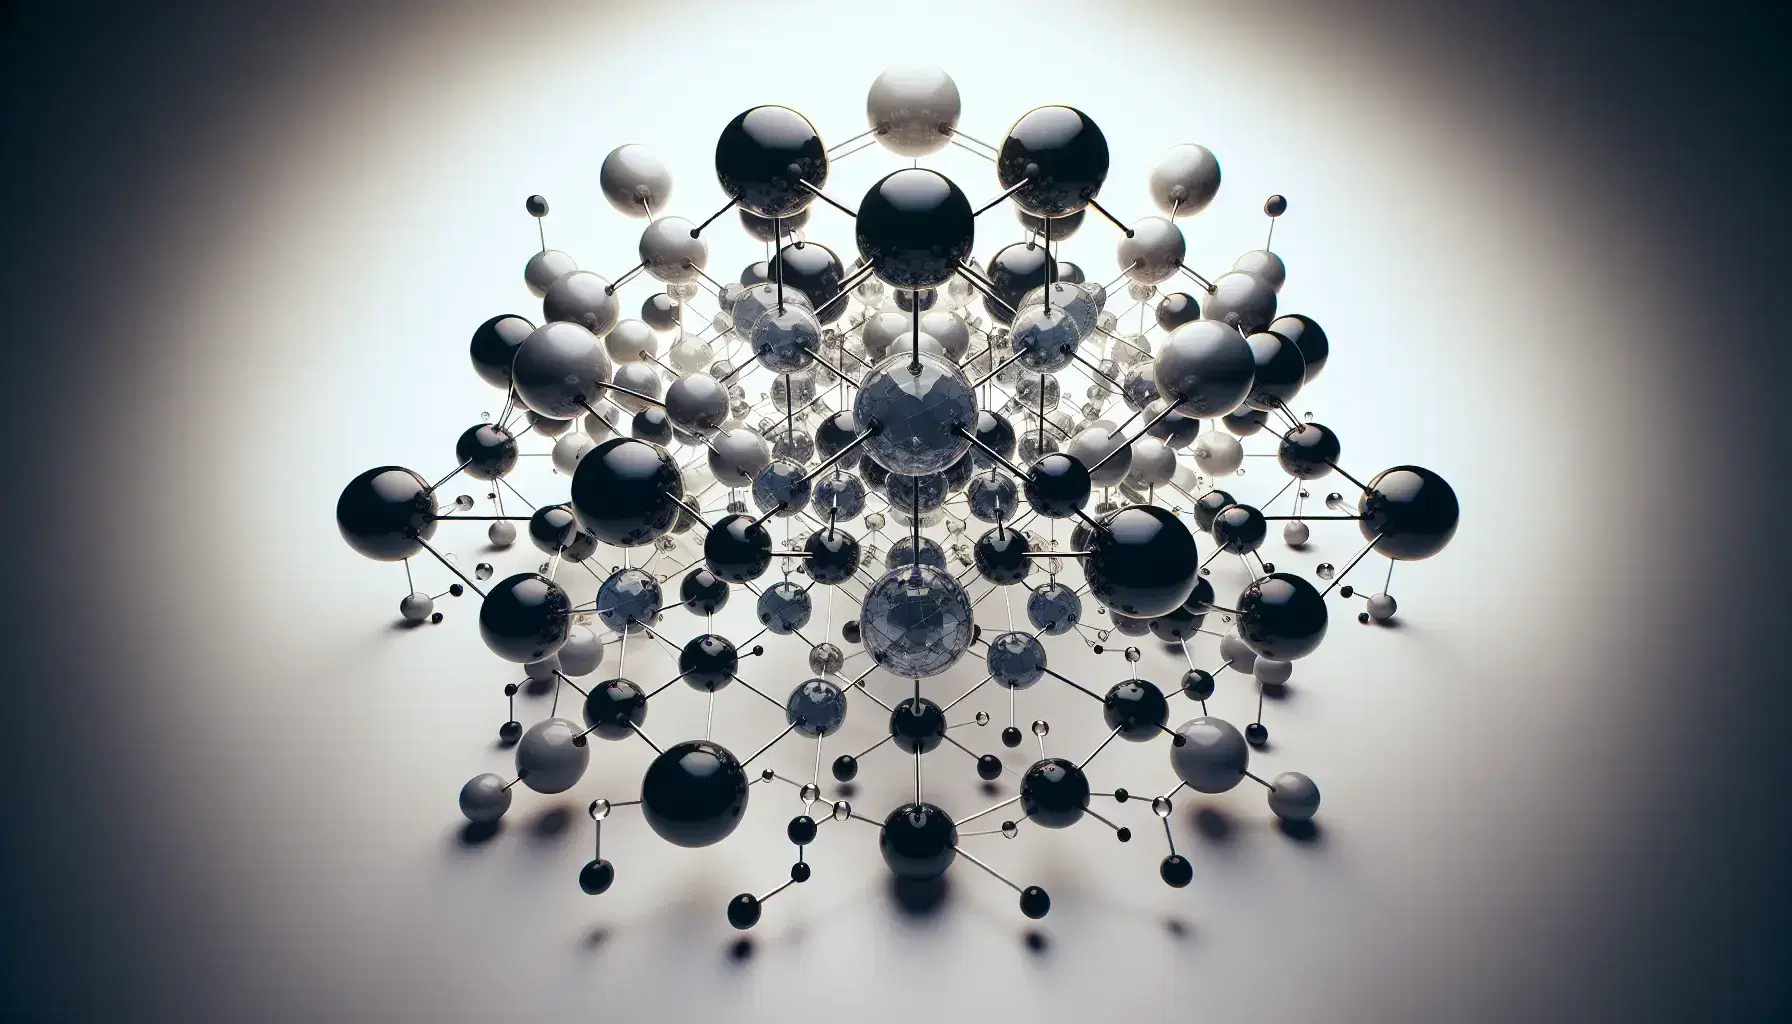 Estructura molecular tridimensional con esferas de diferentes tamaños y colores conectadas por varillas, simulando una red cristalina sobre fondo blanco.